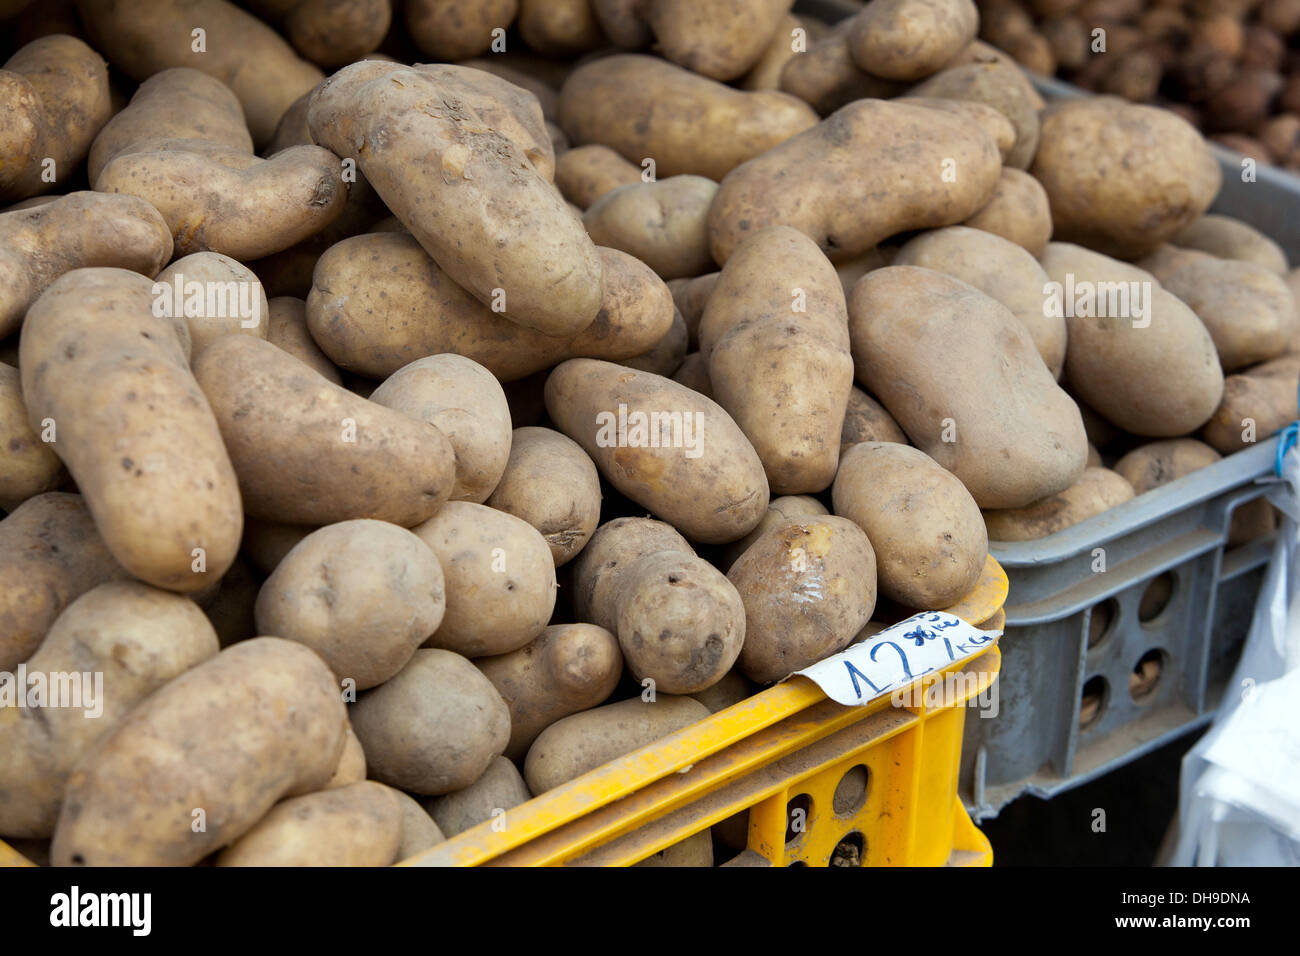 Rue vendant des pommes de terre dans le panier, vente de pommes de terre Banque D'Images